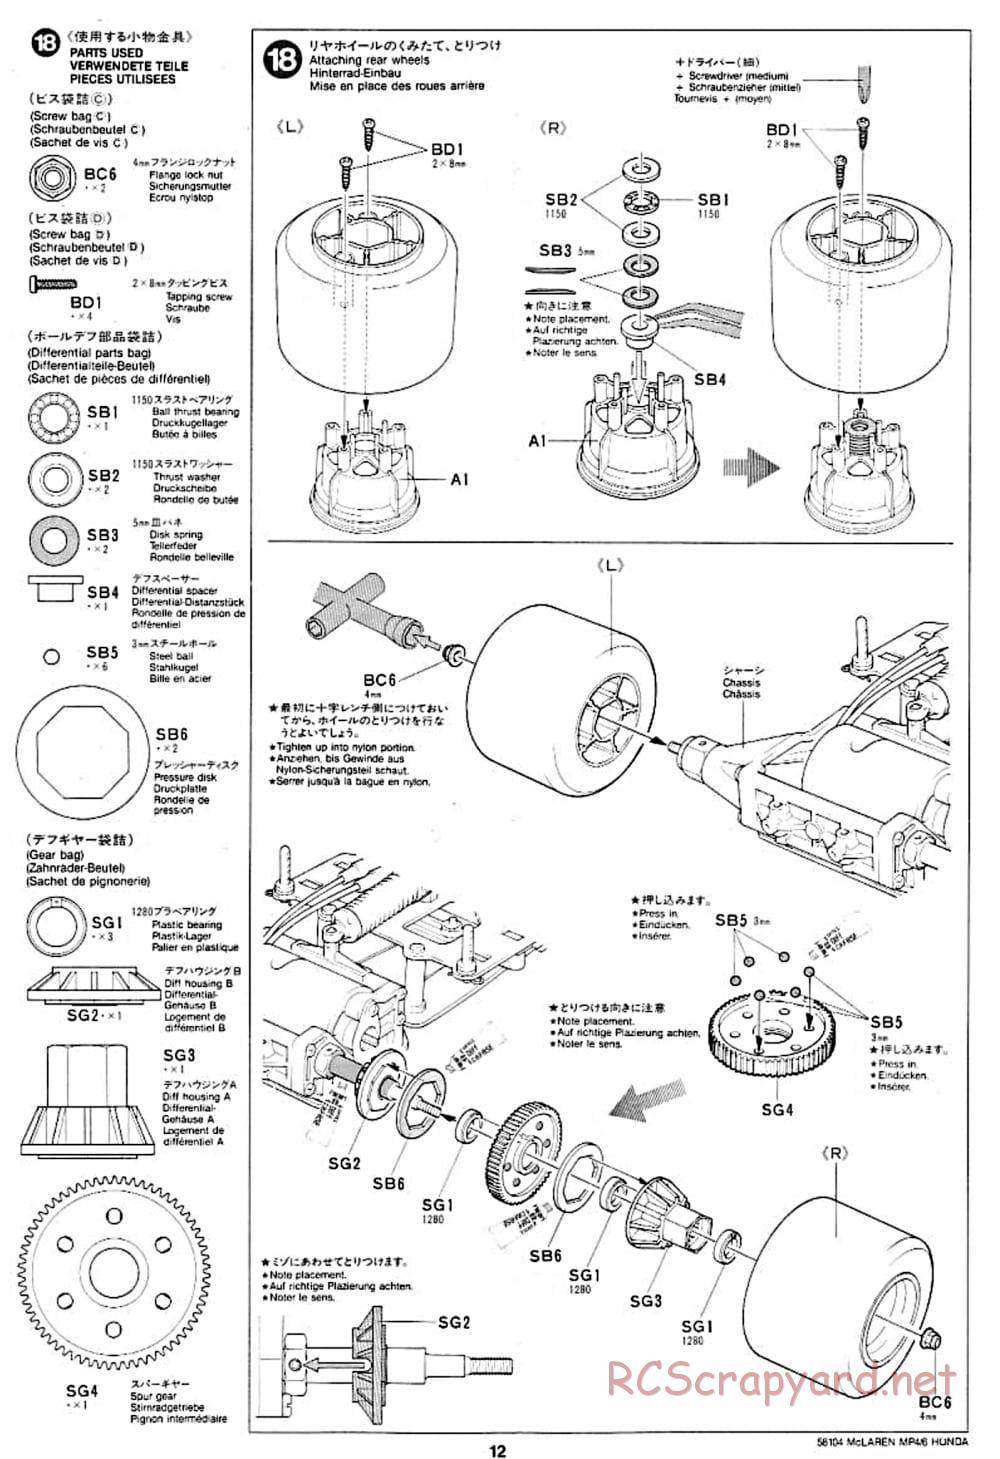 Tamiya - McLaren MP4/6 Honda - F102 Chassis - Manual - Page 12